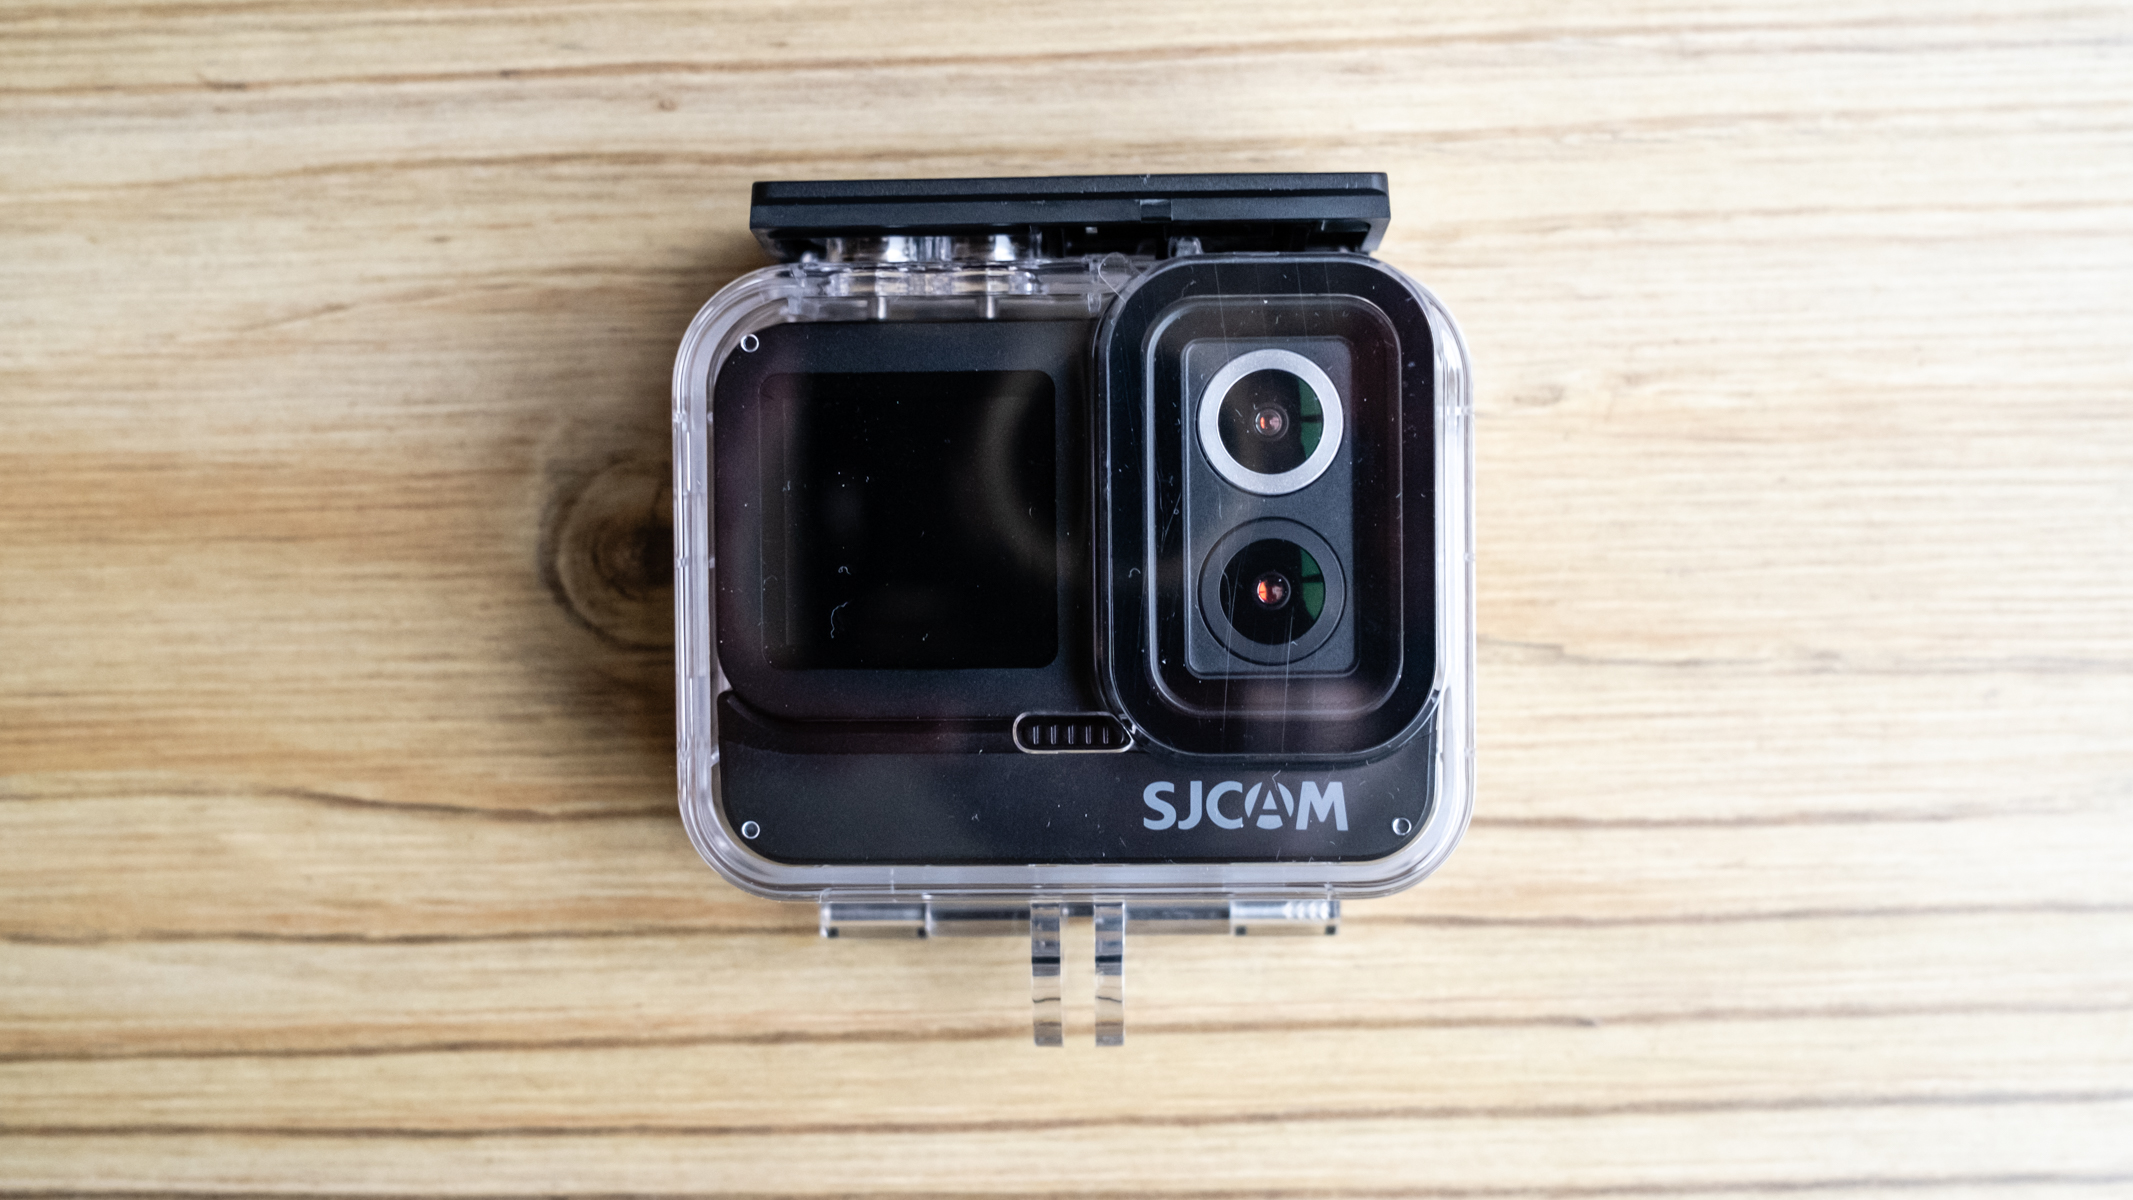 SJCAM SJ20 action camera on a wooden floor